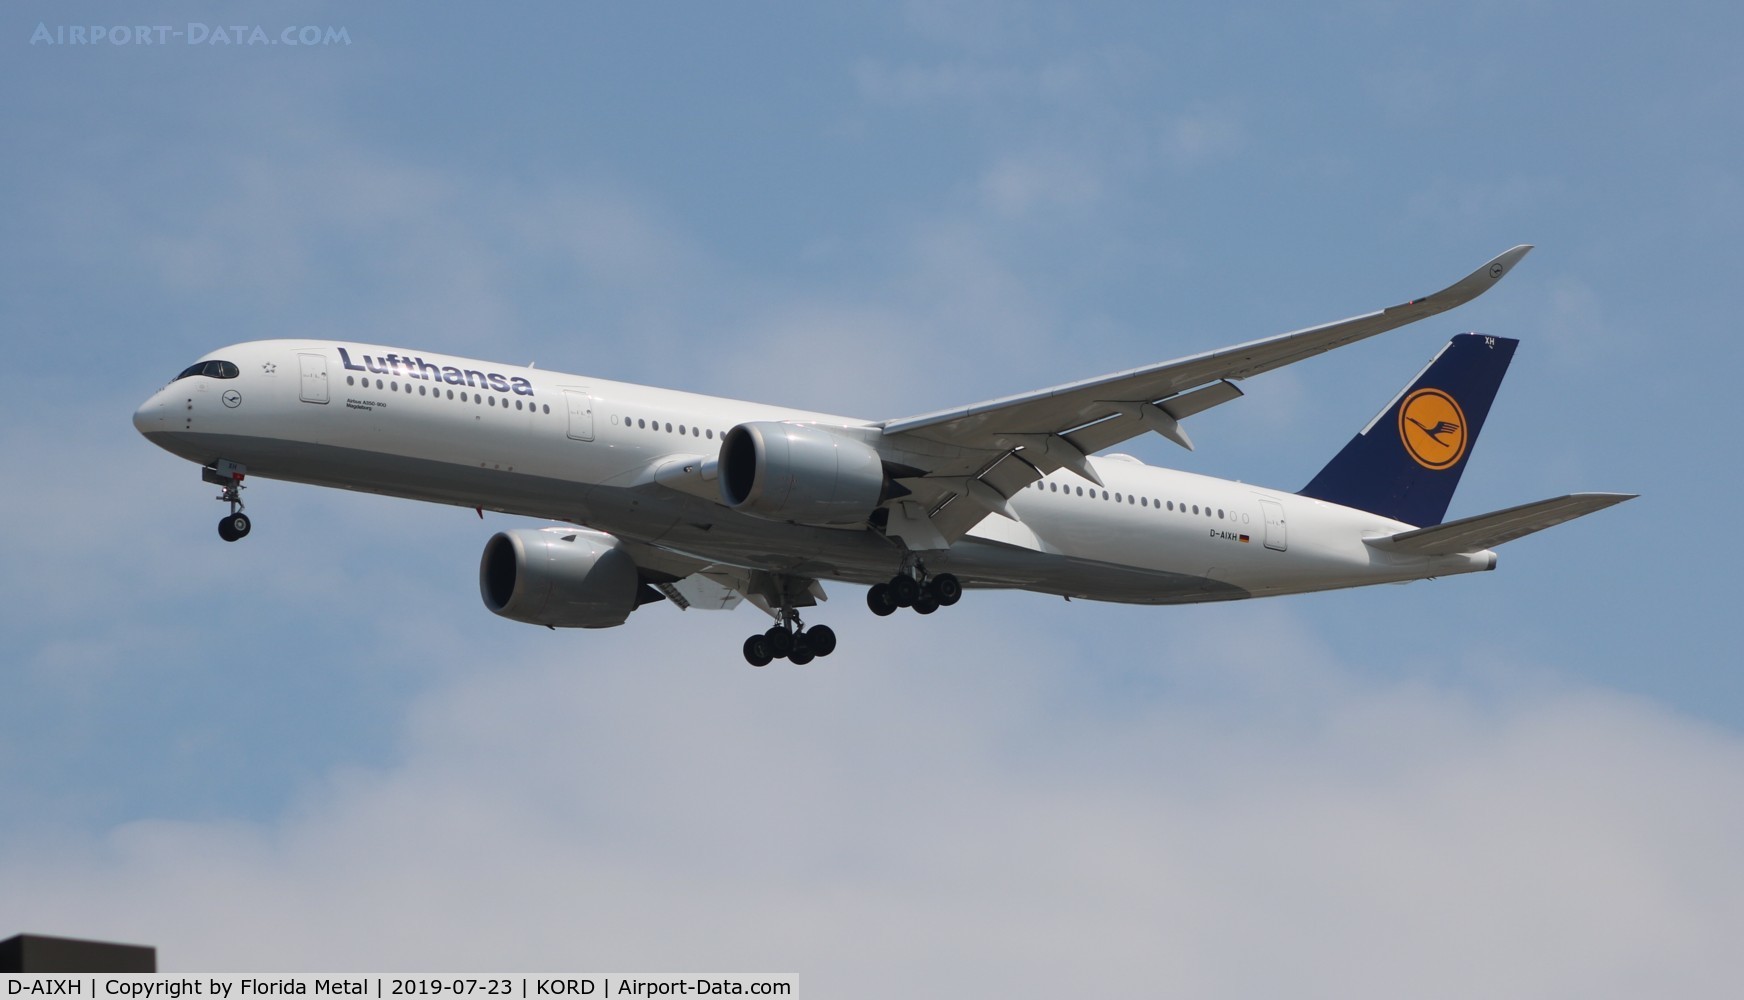 D-AIXH, 2017 Airbus A350-941 C/N 184, Lufthansa